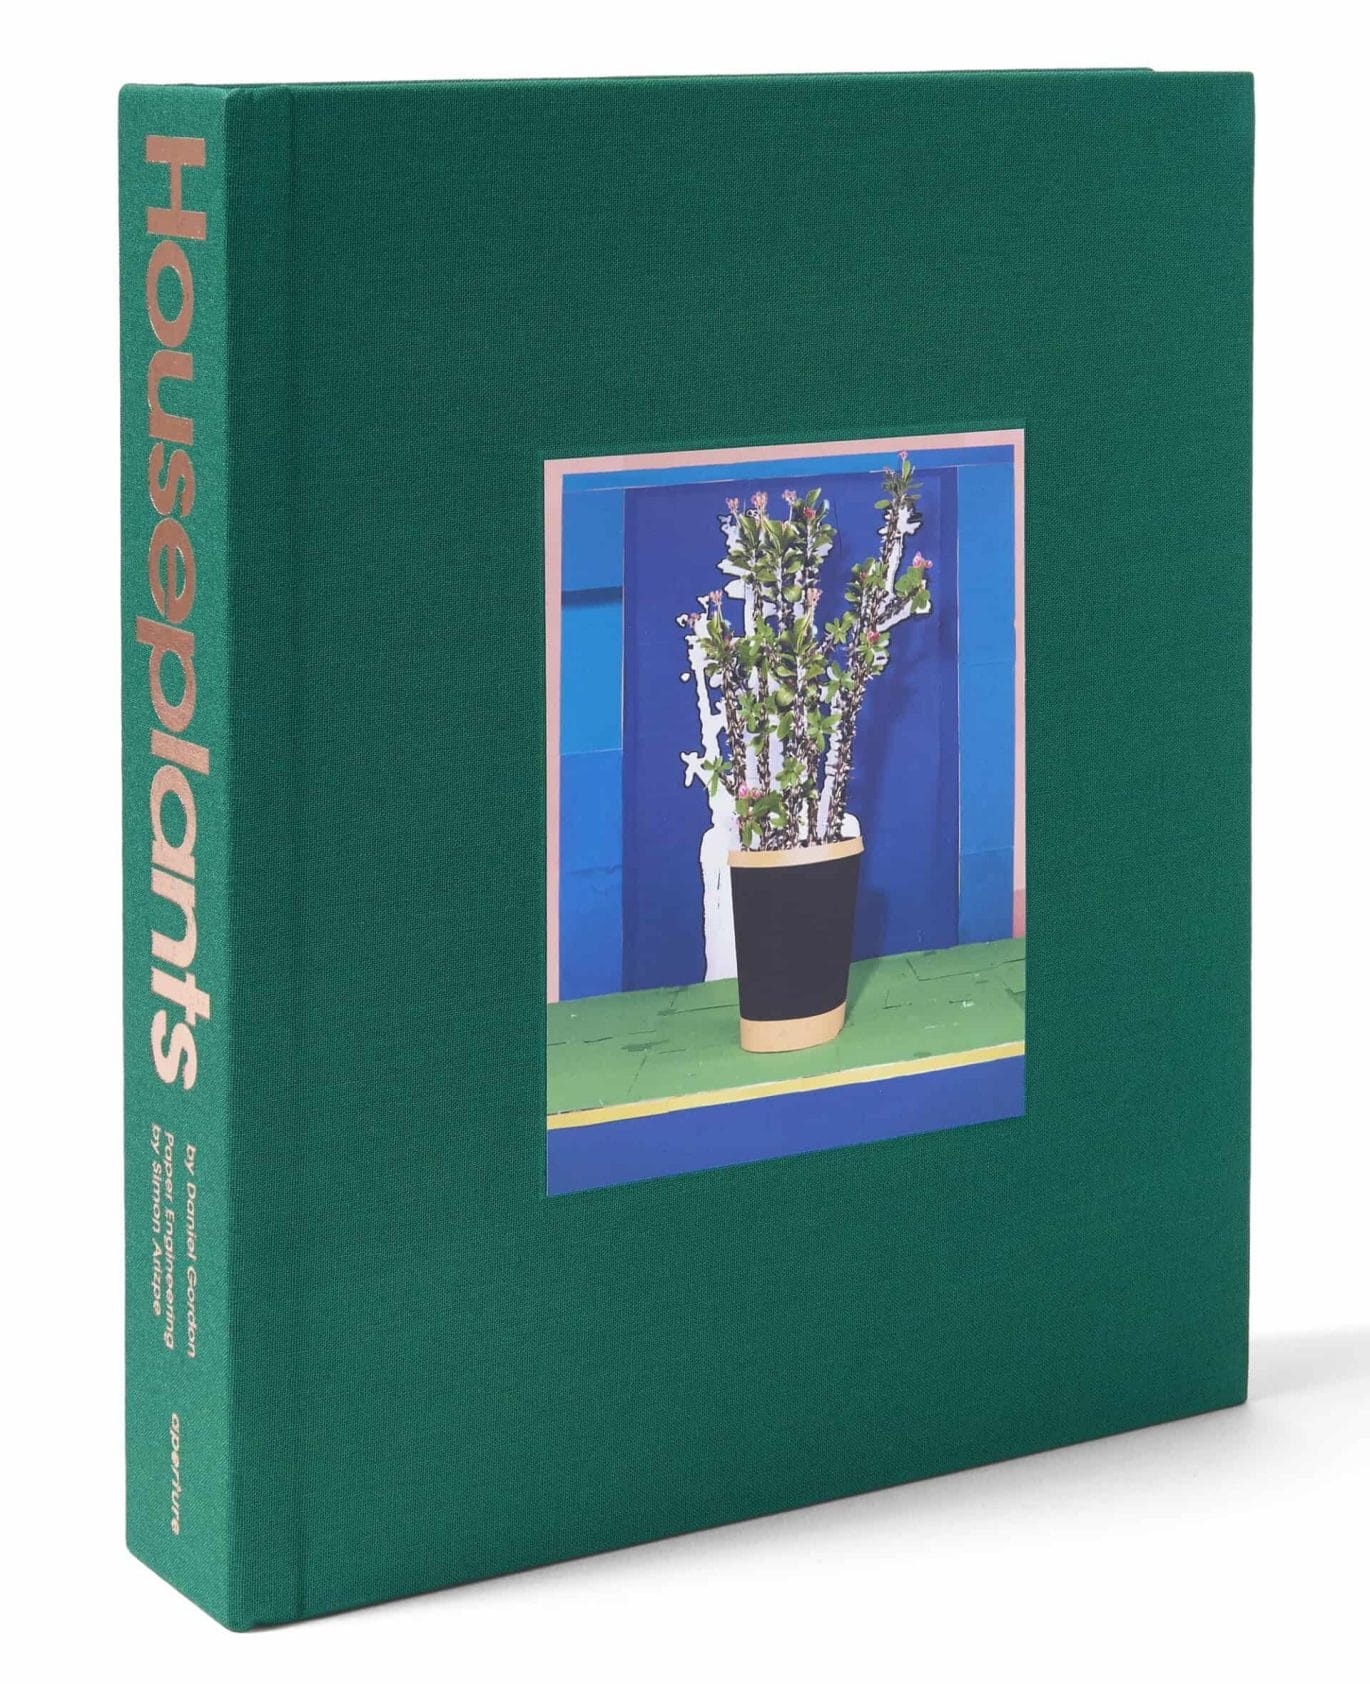 Pop-up boek met populaire kamerplanten